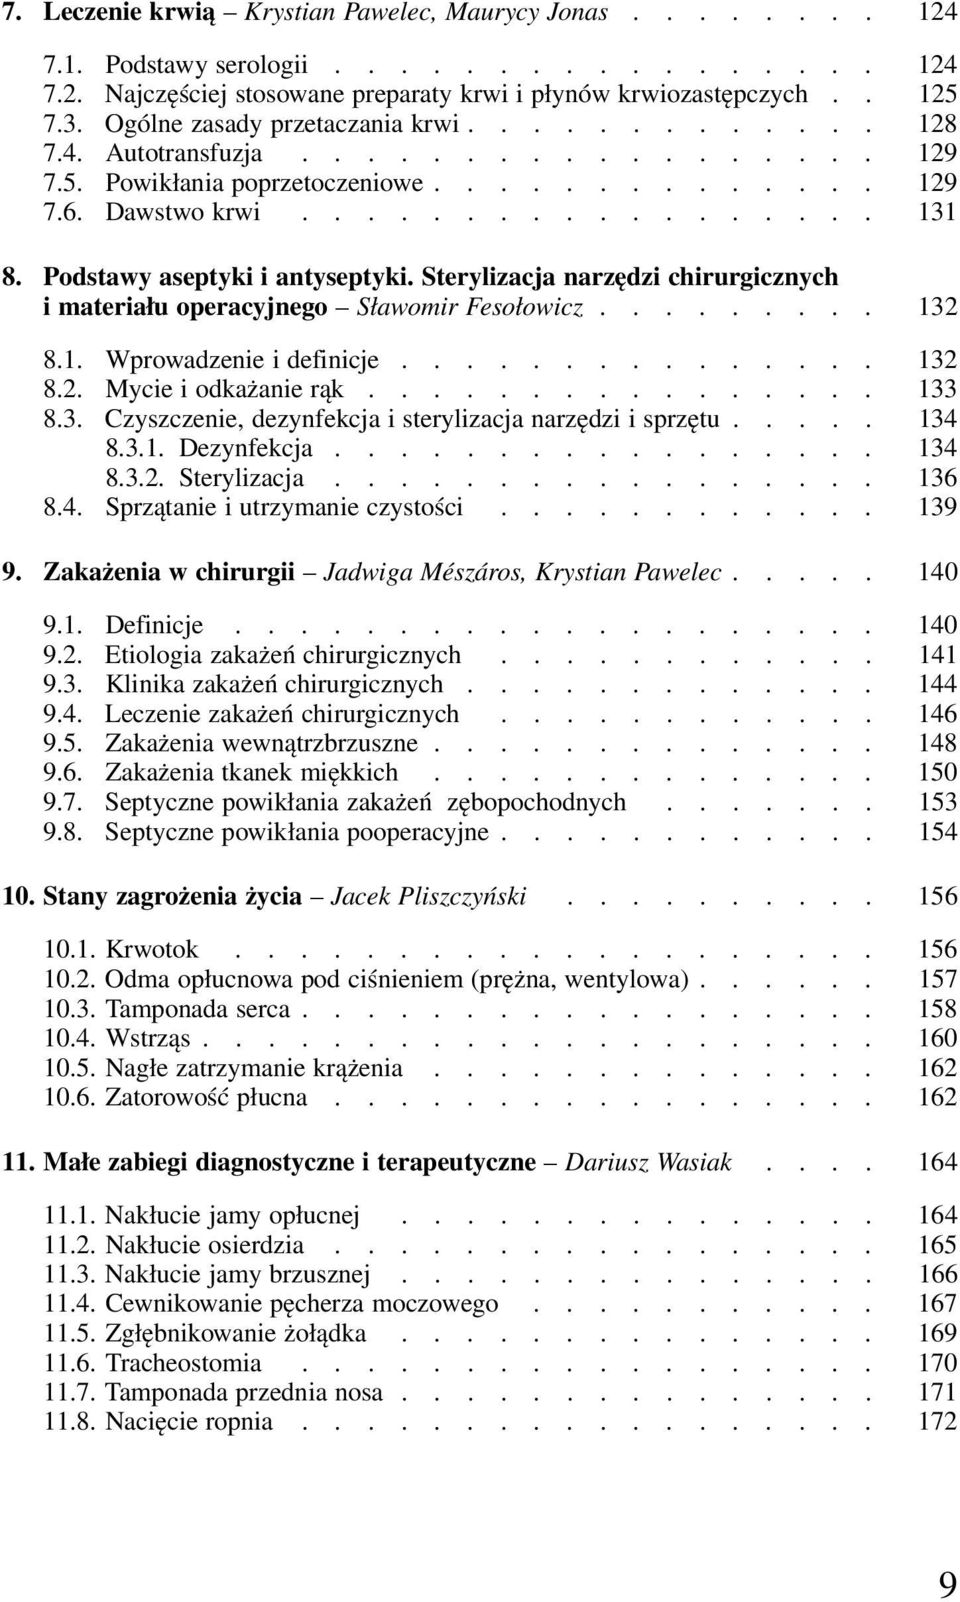 Podstawy aseptyki i antyseptyki. Sterylizacja narzędzi chirurgicznych i materiału operacyjnego Sławomir Fesołowicz......... 132 8.1. Wprowadzenie i definicje............... 132 8.2. Mycie i odkażanie rąk.